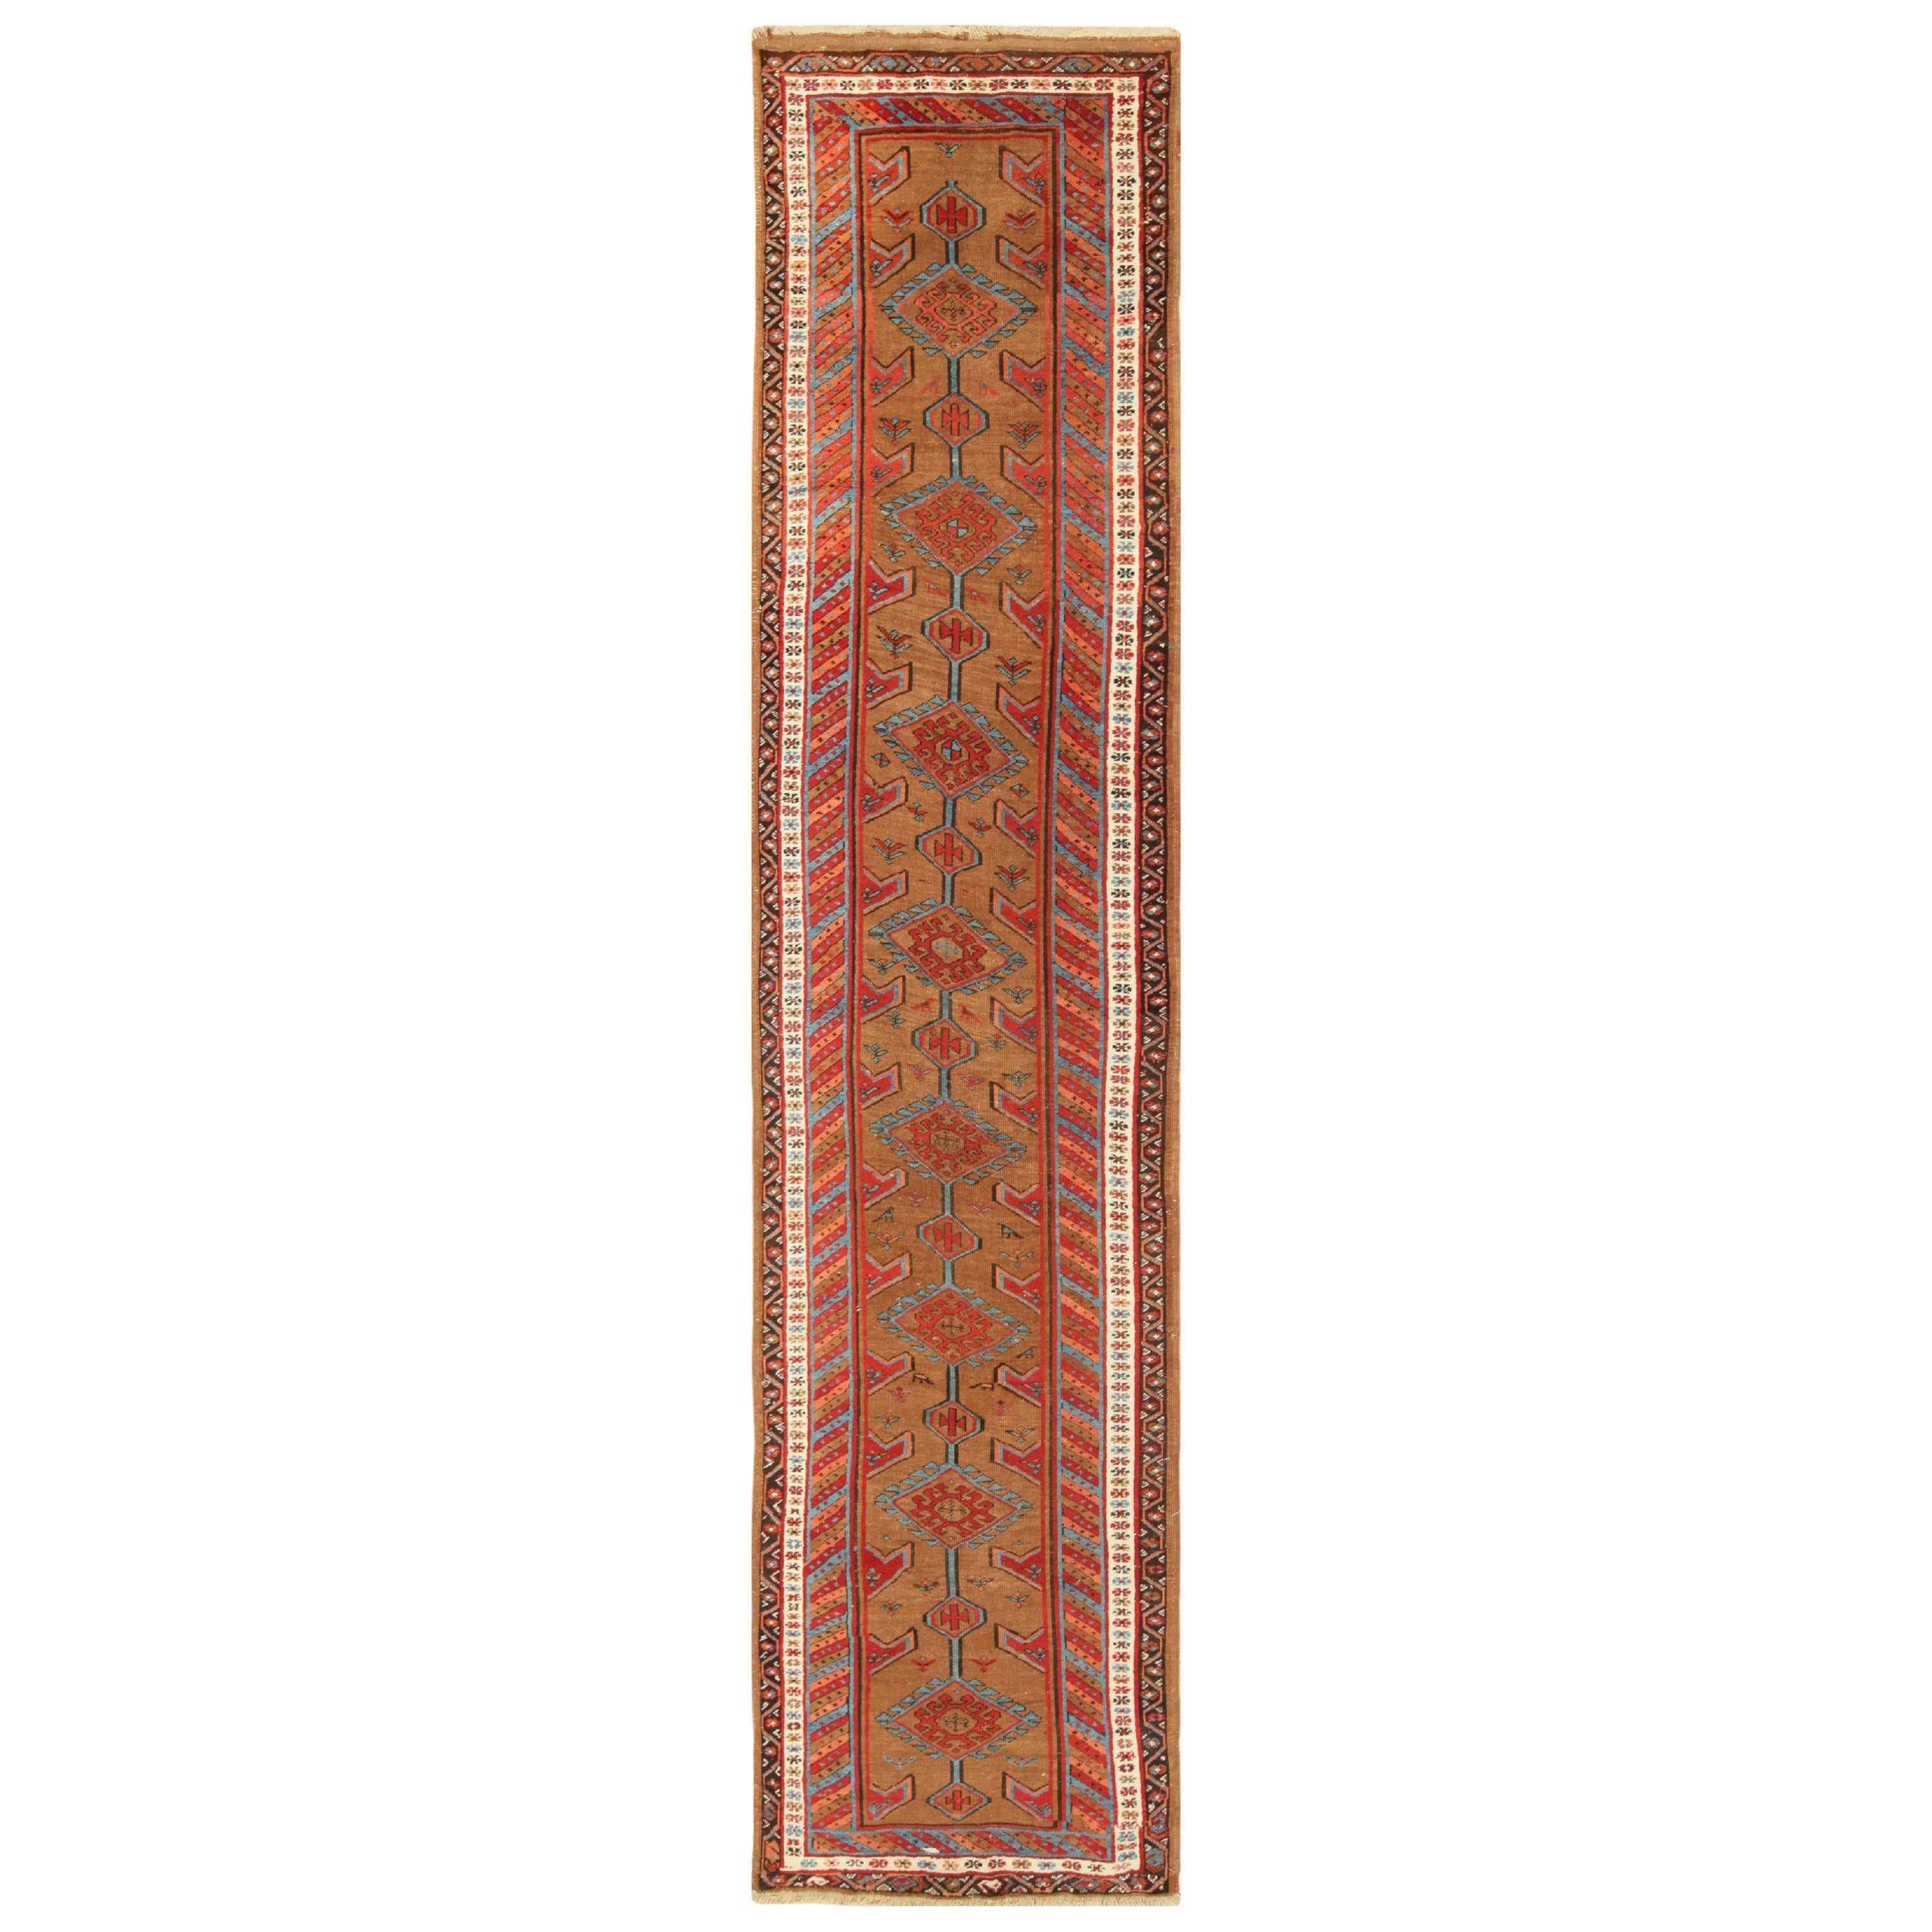 Antique Tribal Persian Bakshaish Runner Rug. 3 ft 3 in x 14 ft 